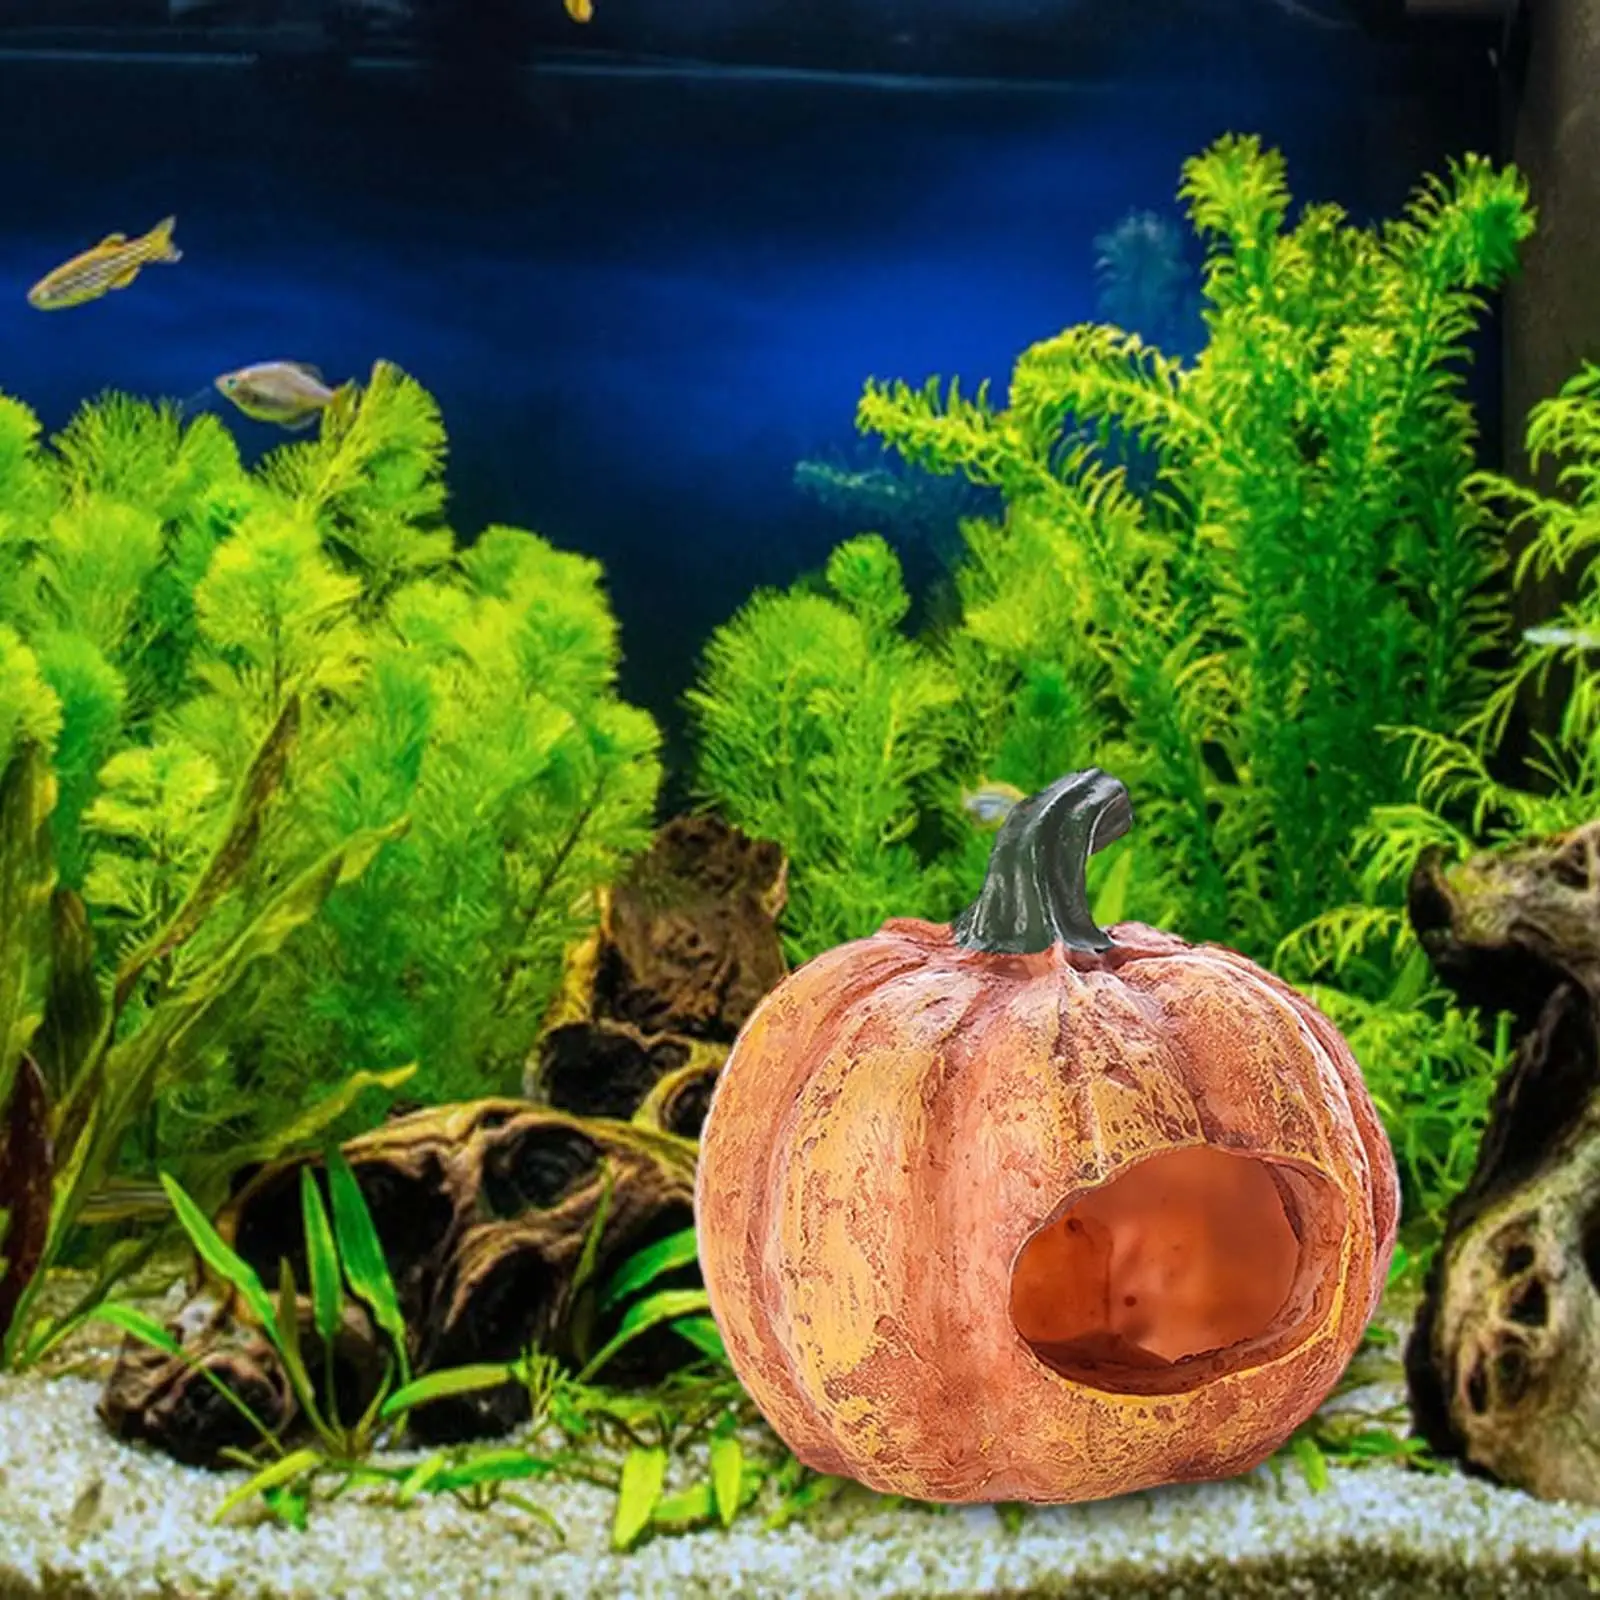 Pumpkin Fish Tank Decor Pumpkin Fish Cave Artificial Durable Fish Hide Cave for Aquarium Tabletop Fish Tank Turtles Aquatic Pets